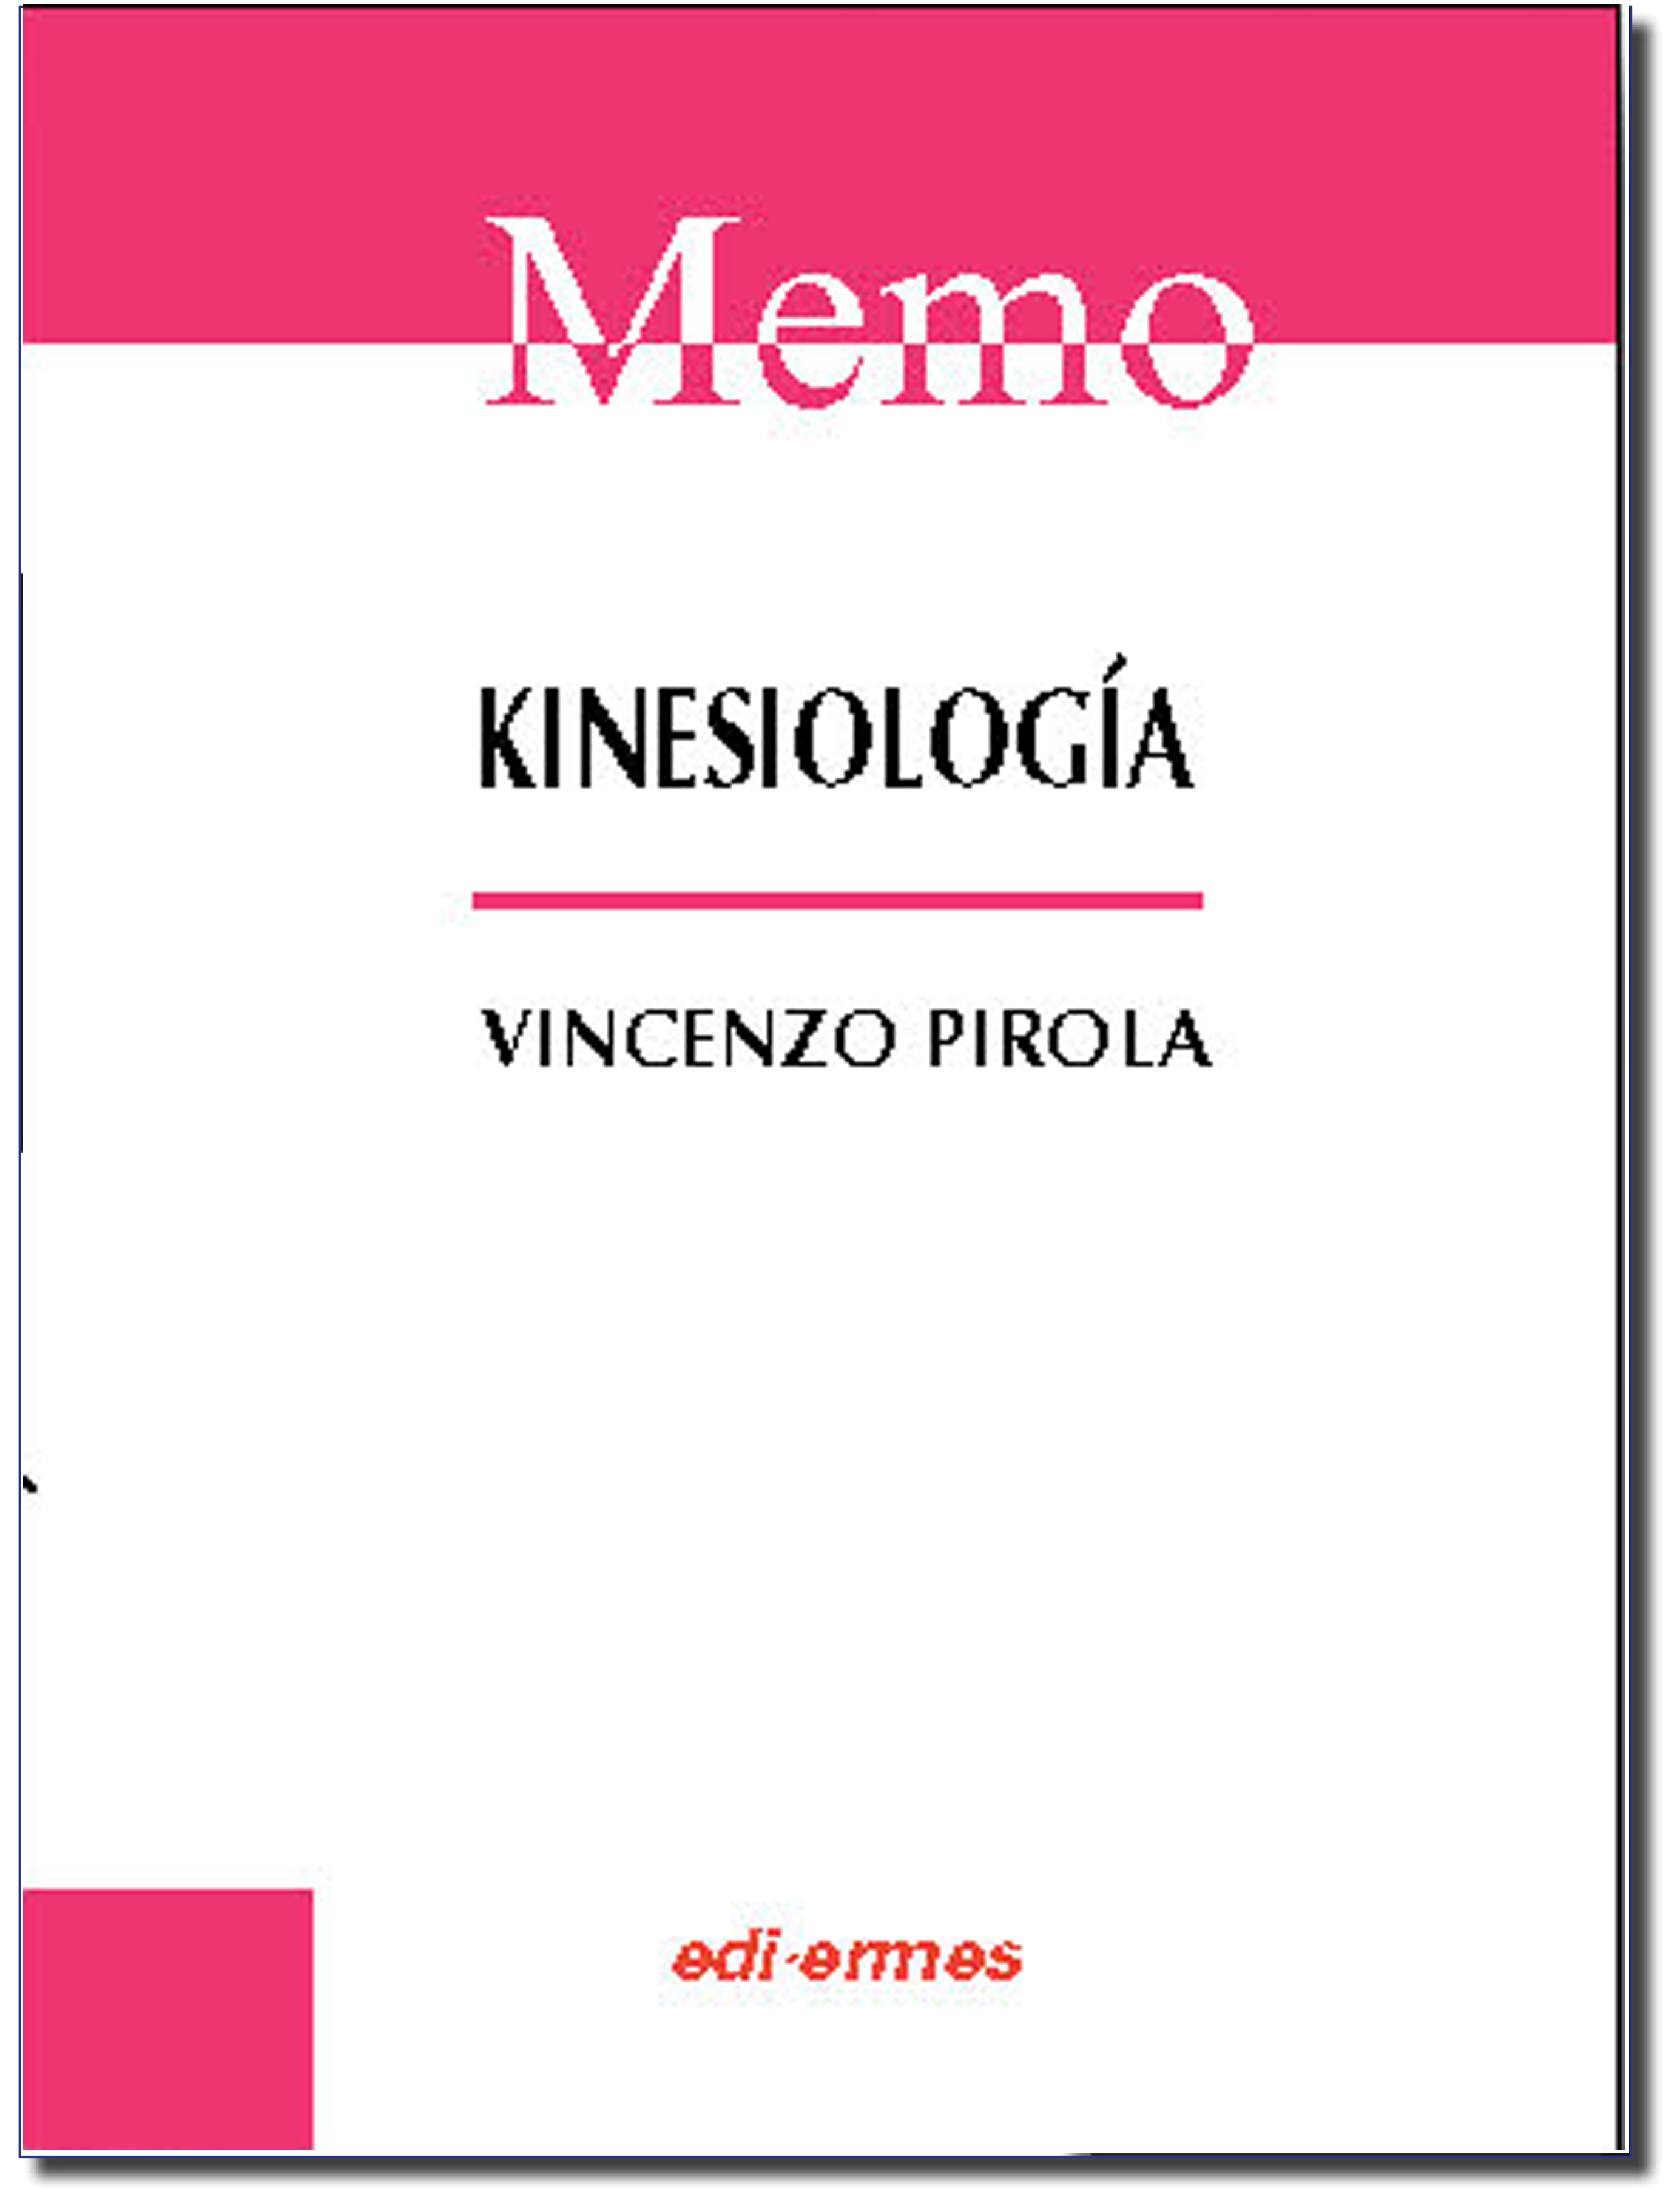 Memo - Kinesiología